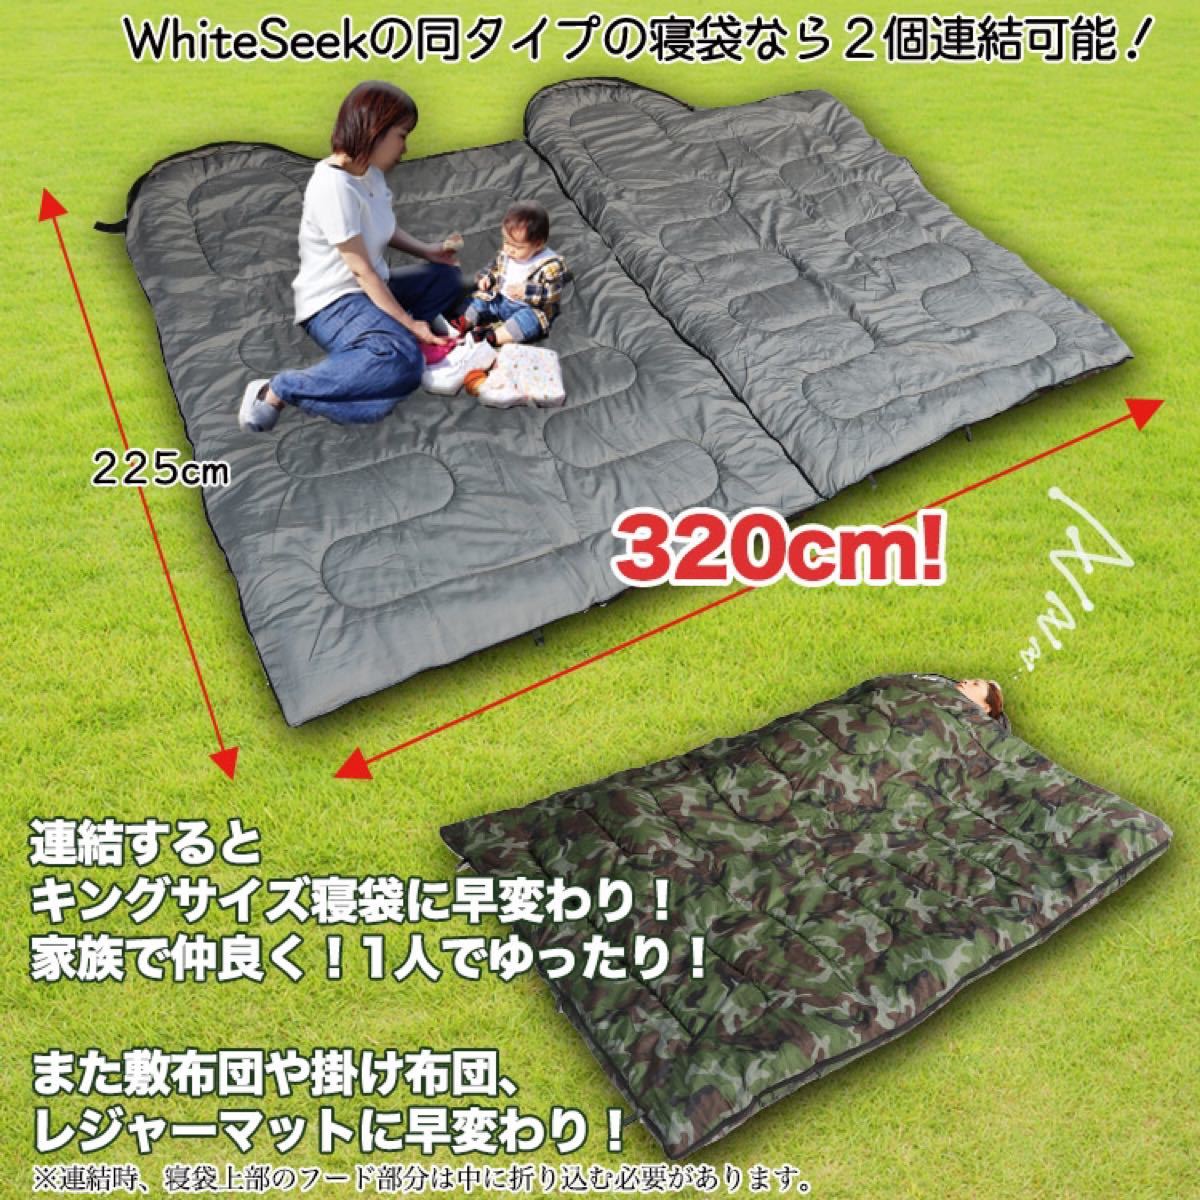 寝袋 シュラフ 封筒型 ワイド 暖かい 冬用 アウトドア キャンプ 防災 地震対策 1人キャンプ 幅広 大きい コンパクト